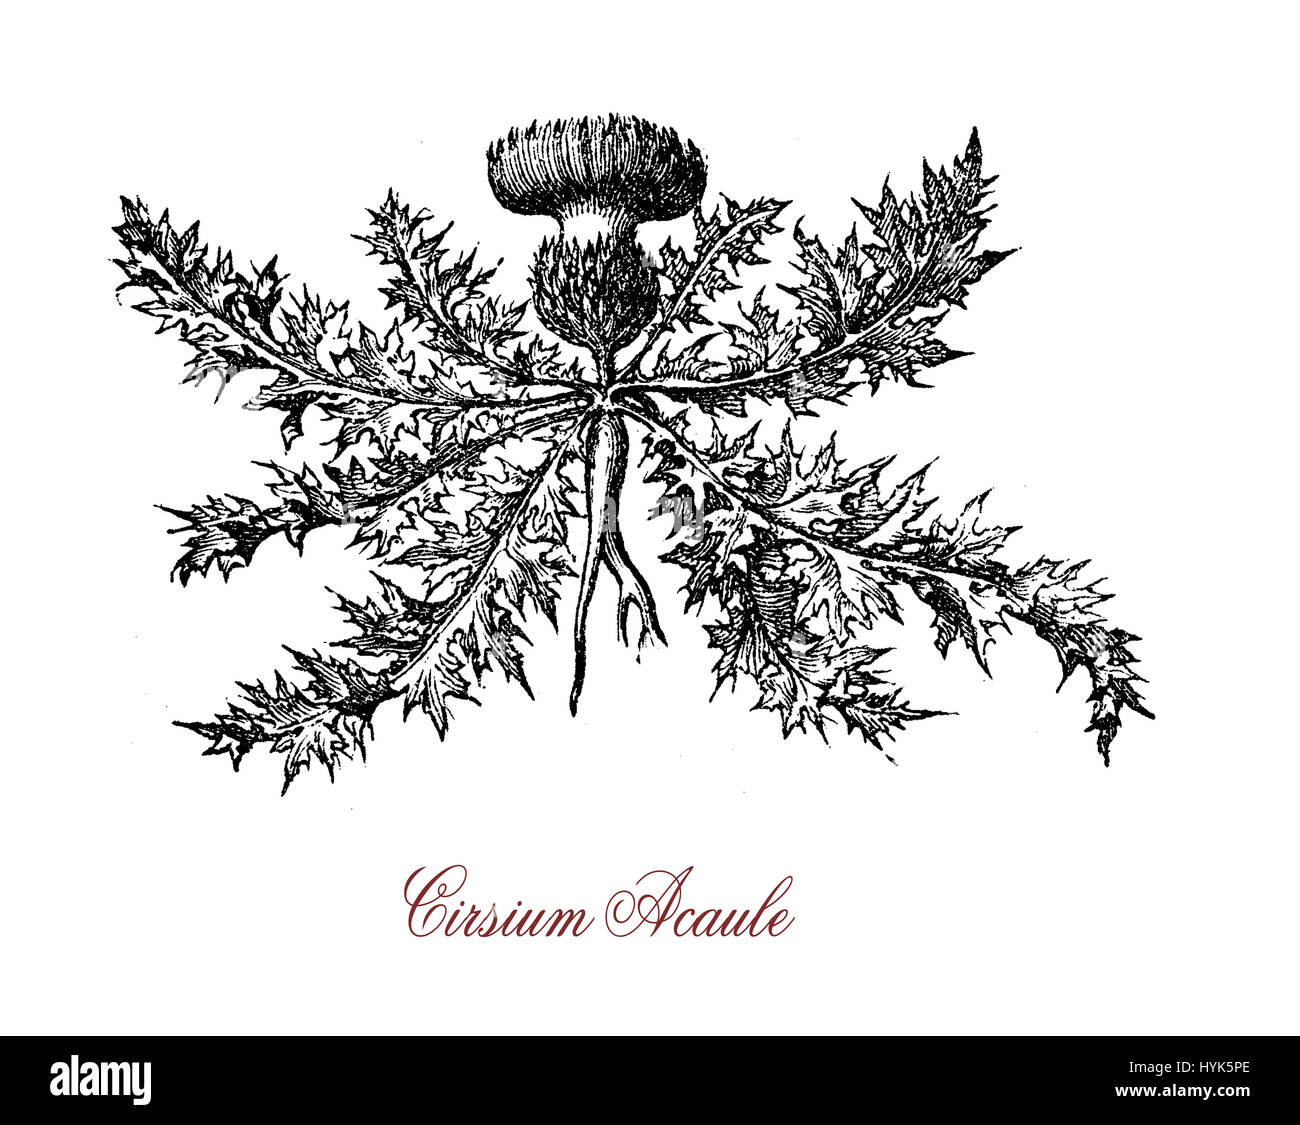 Botanische Vintage Gravur von Cirsium Acaule, mehrjährige Pflanze mit stacheligen behaarten Blätter Pread wie eine Rosette und rot-violetten Blüten in Europa heimisch. Stockfoto